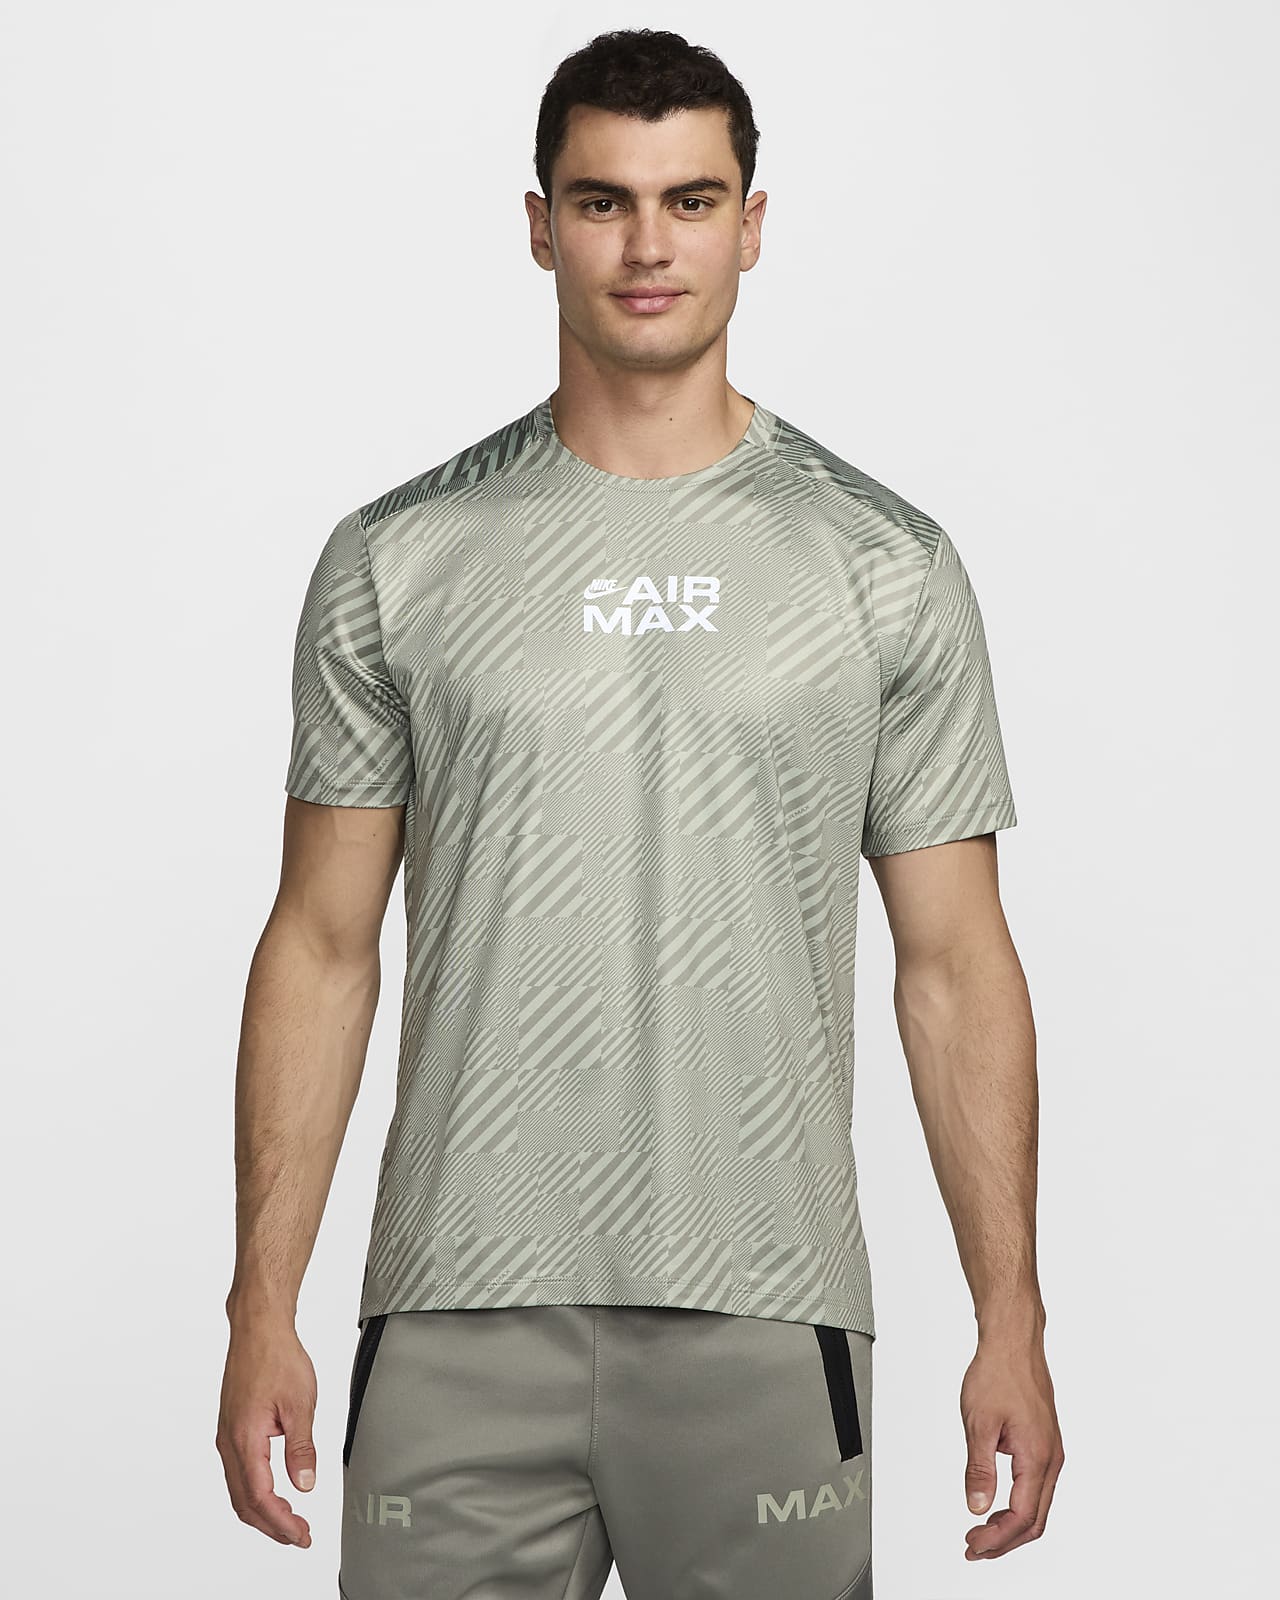 Nike Air Max Men's T-Shirt